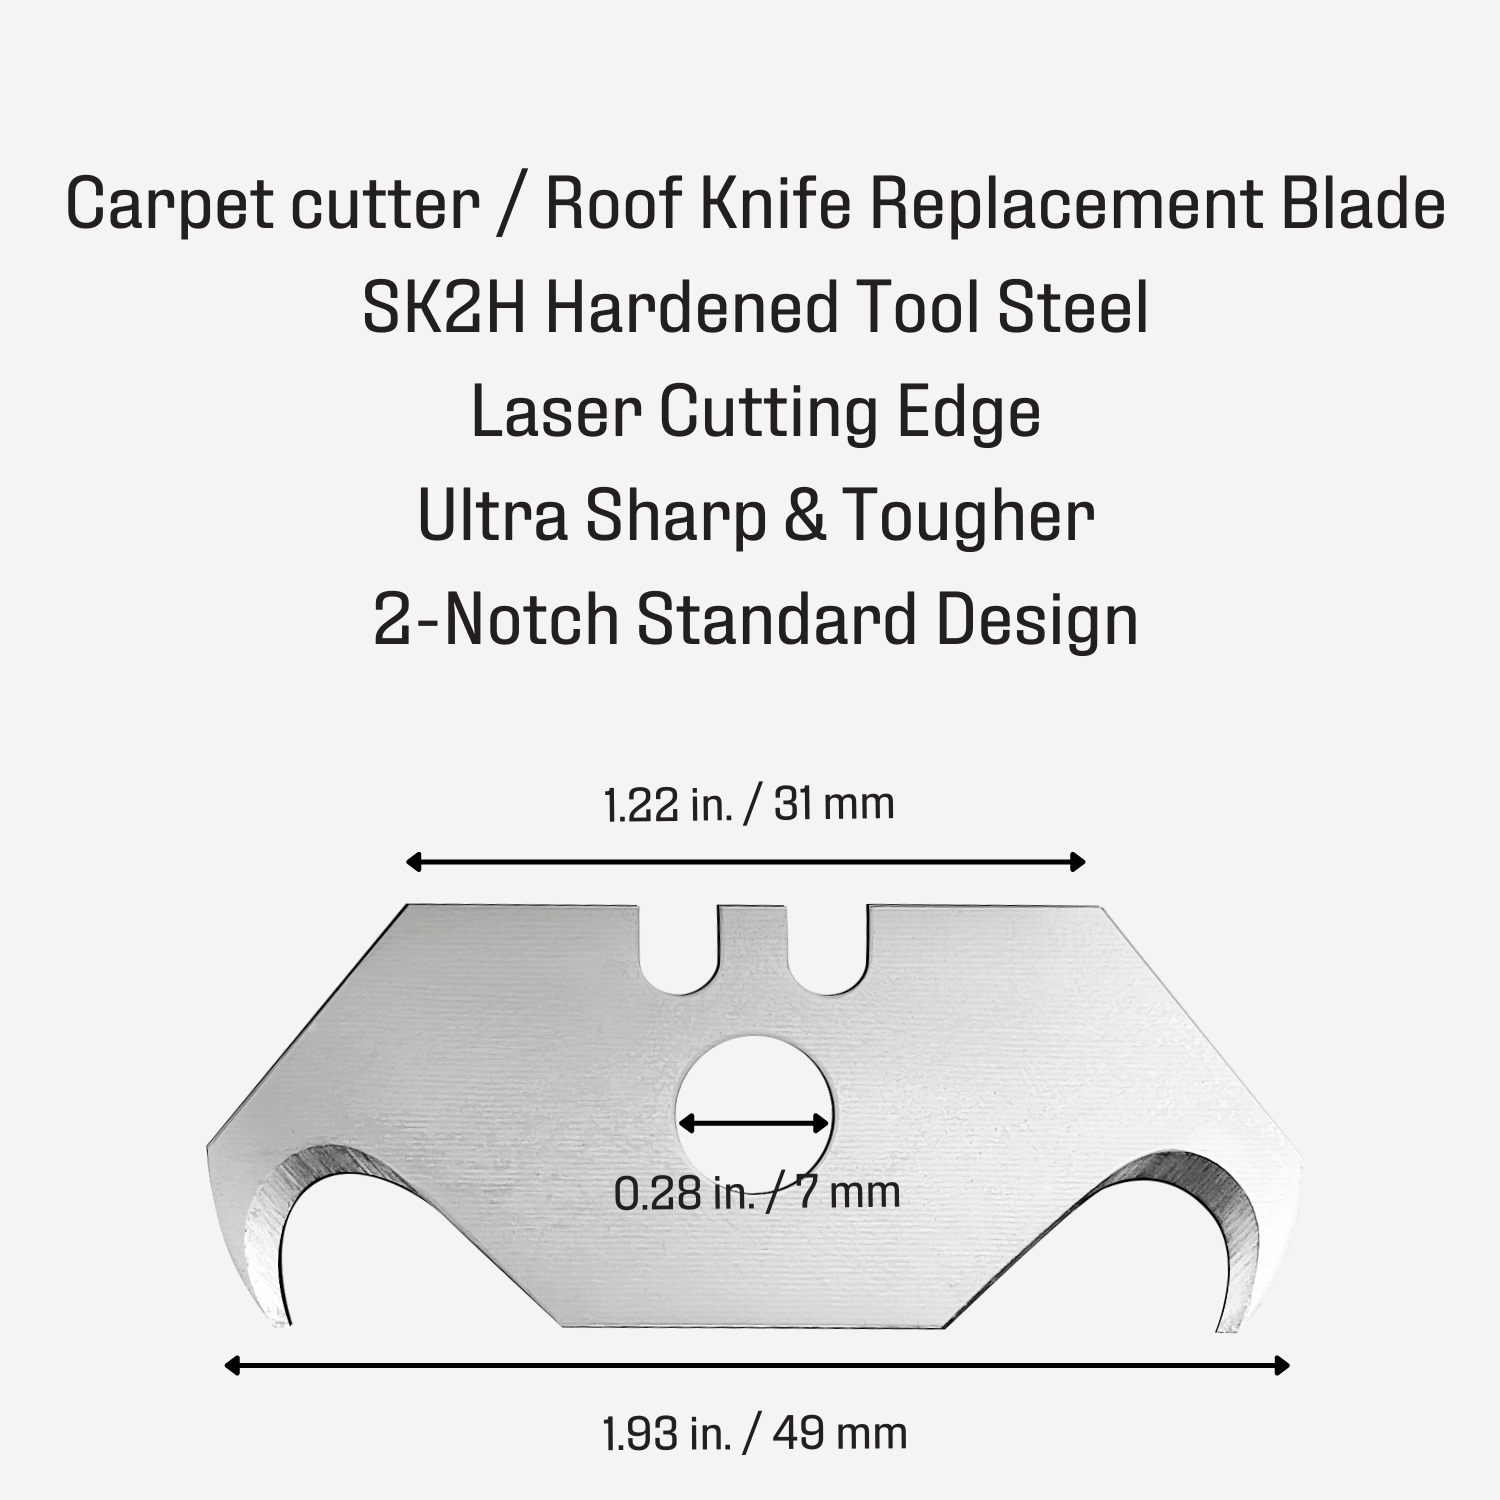 Heavy Duty SK5 Steel Hook Blade for Box Cutter Carpet Cutter